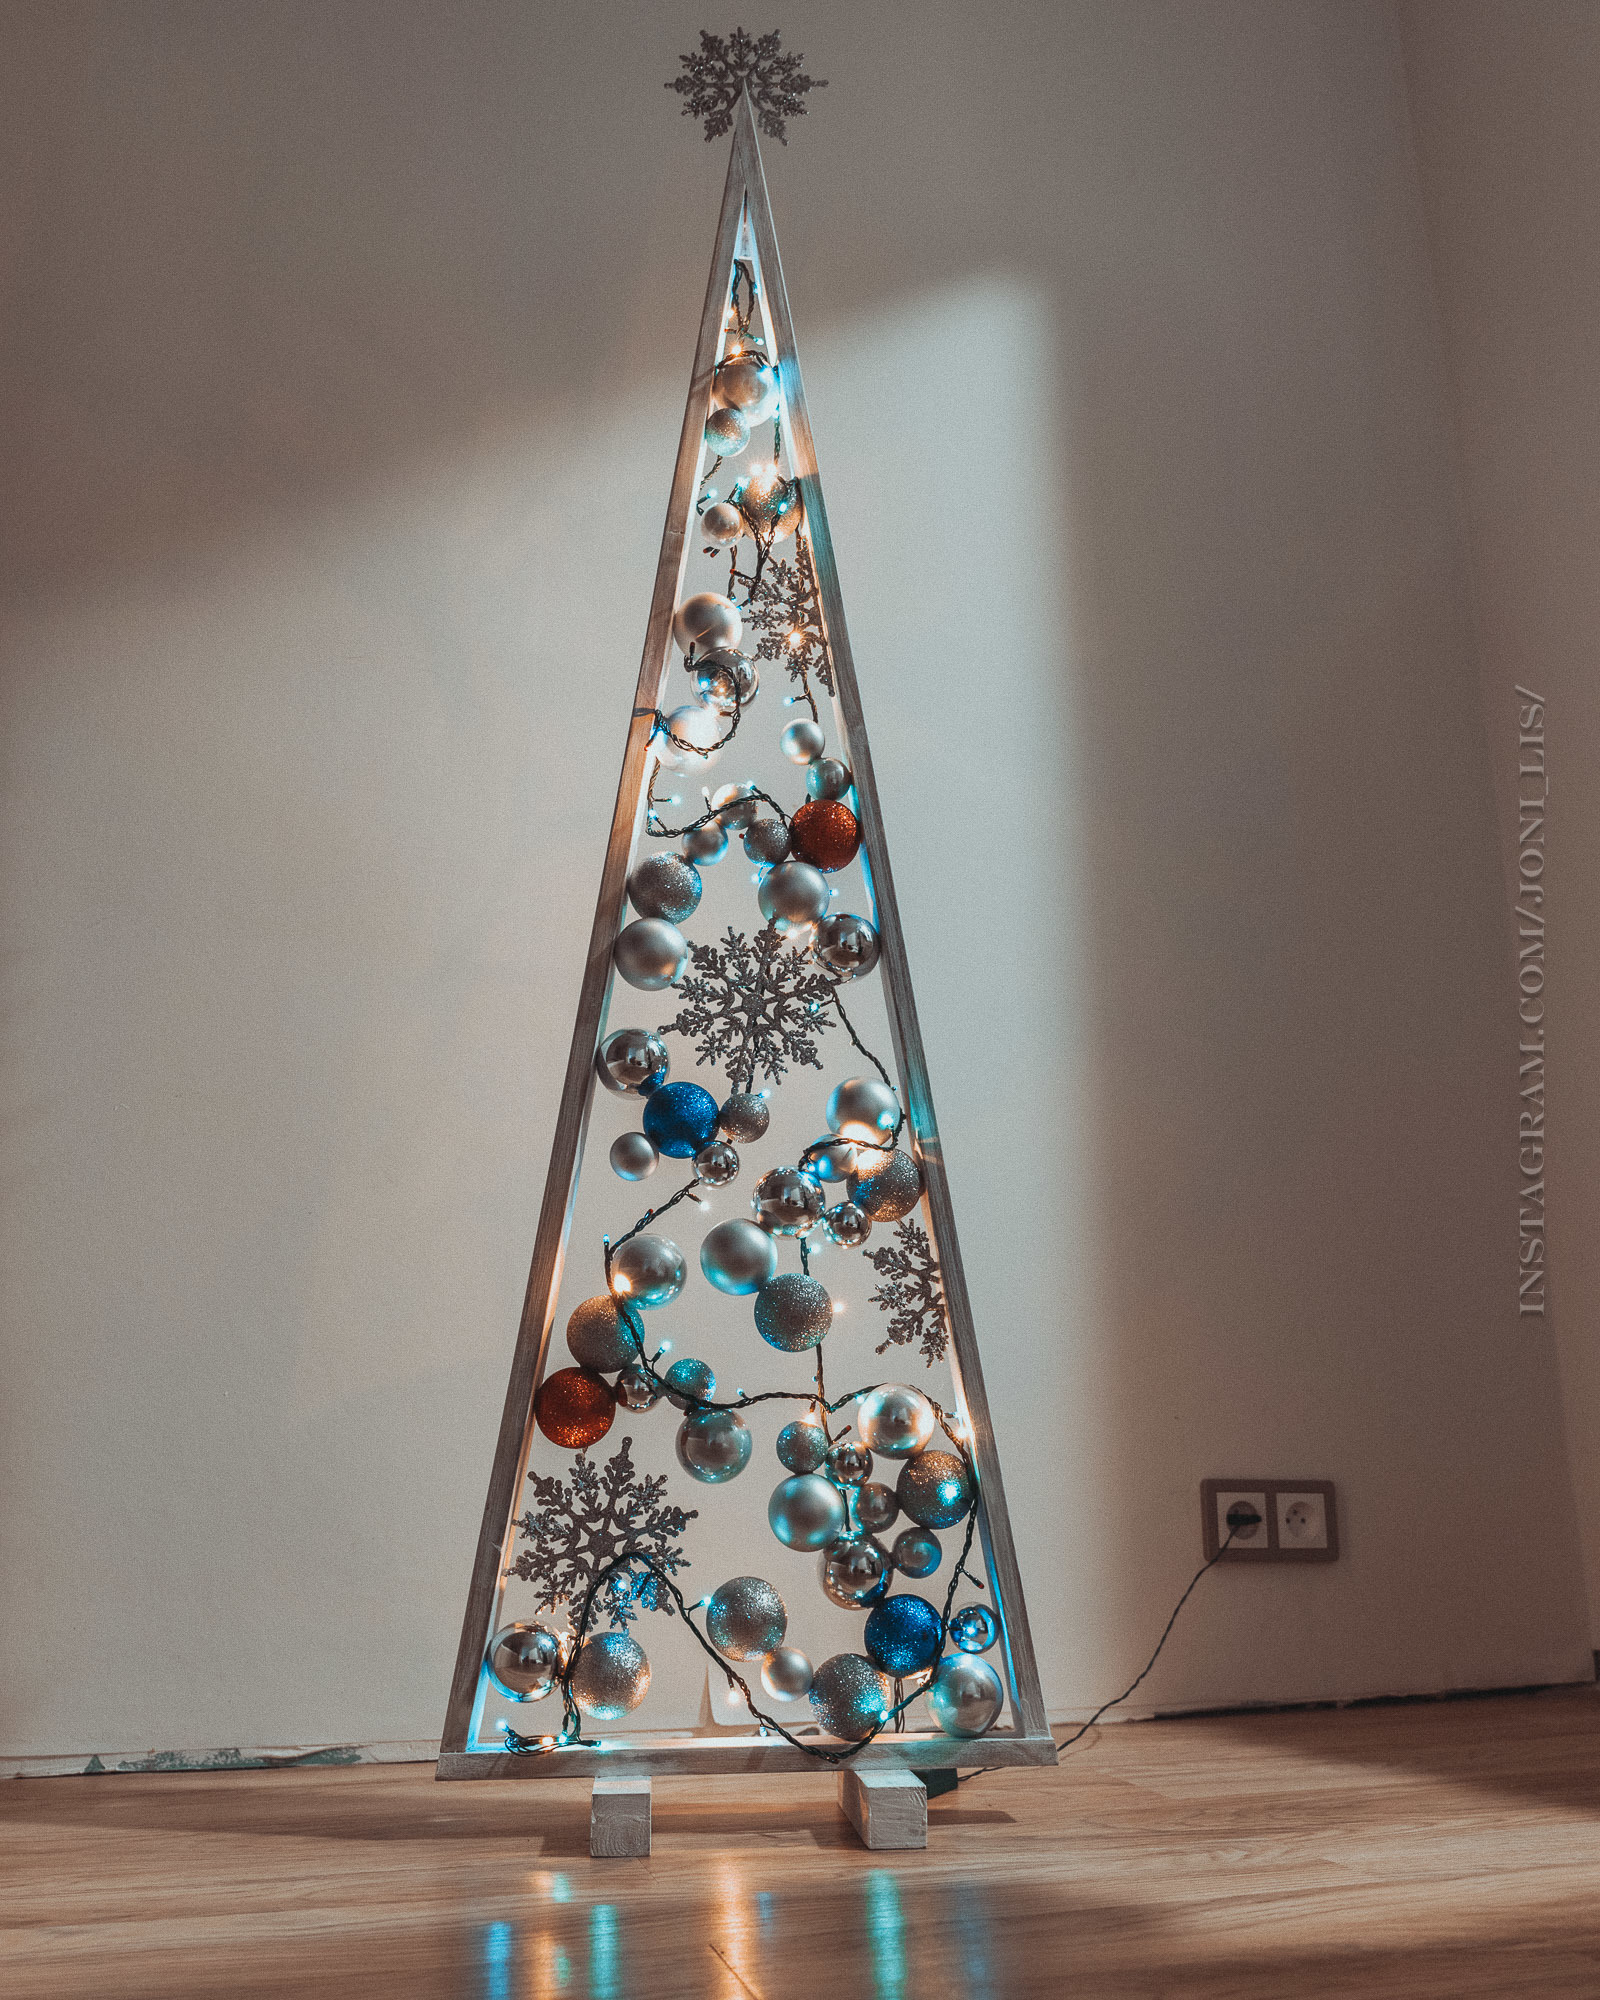 Как креативно нарядить елку к Новому году - показываю варианты